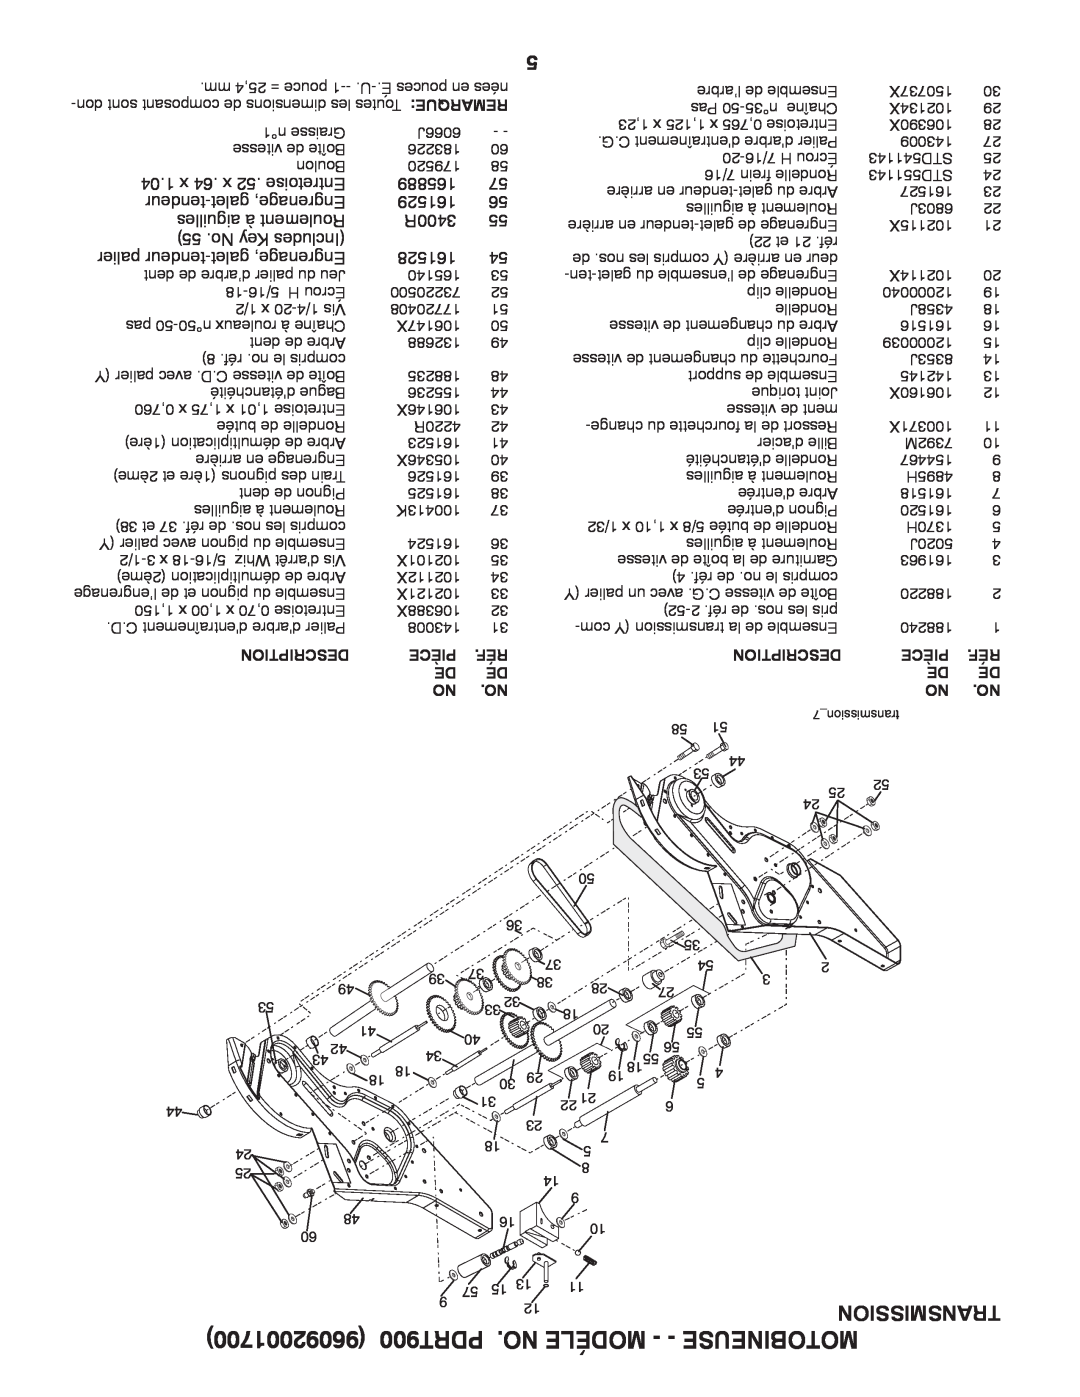 Poulan 96092001700 manual PDRT900 .NO MODÉLE - - MOTOBINEUSE, Transmission, Description, Pièce 